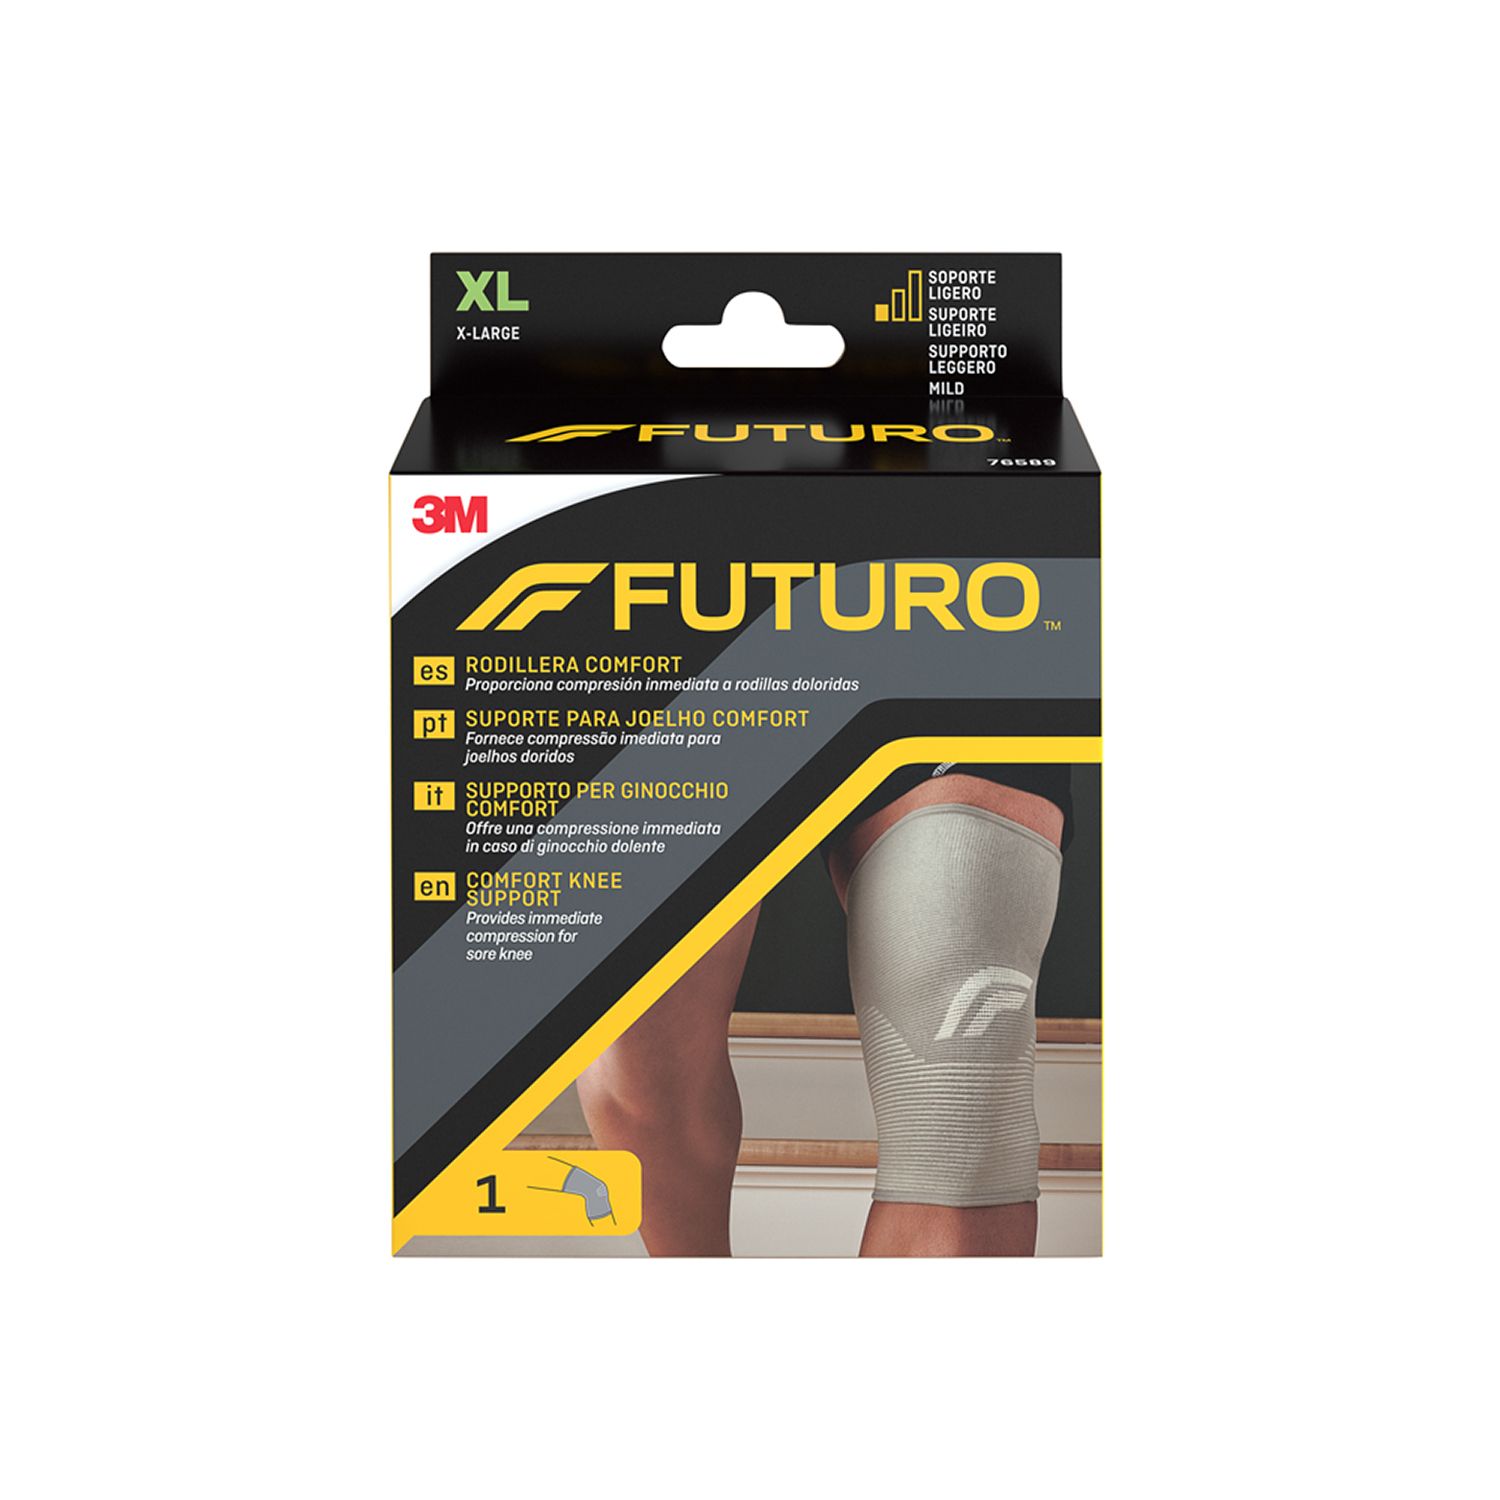 FUTURO™ Supporto per ginocchio comfort  XL